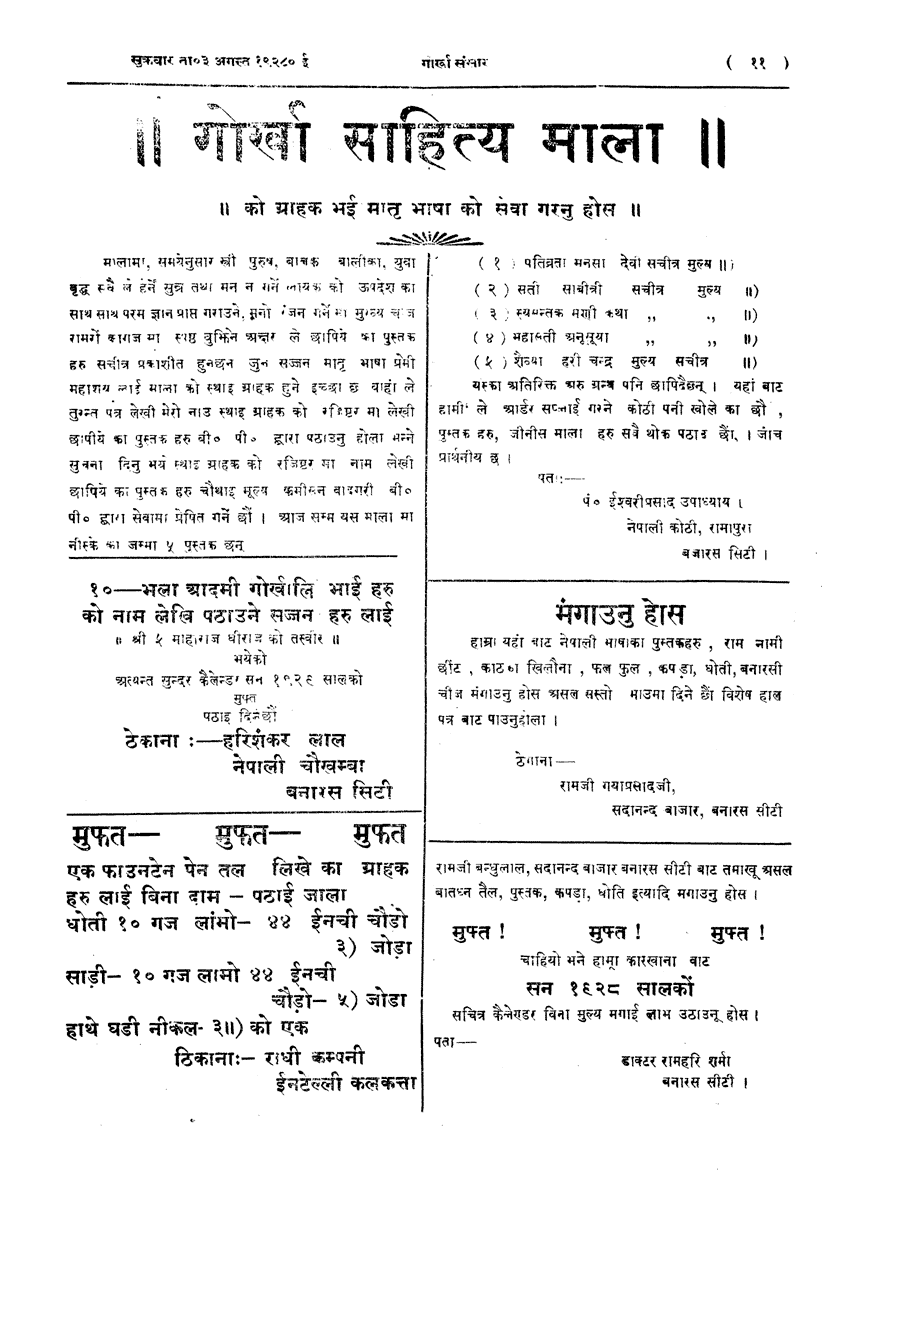 Gorkha Sansar, 10 Aug 1928, page 11